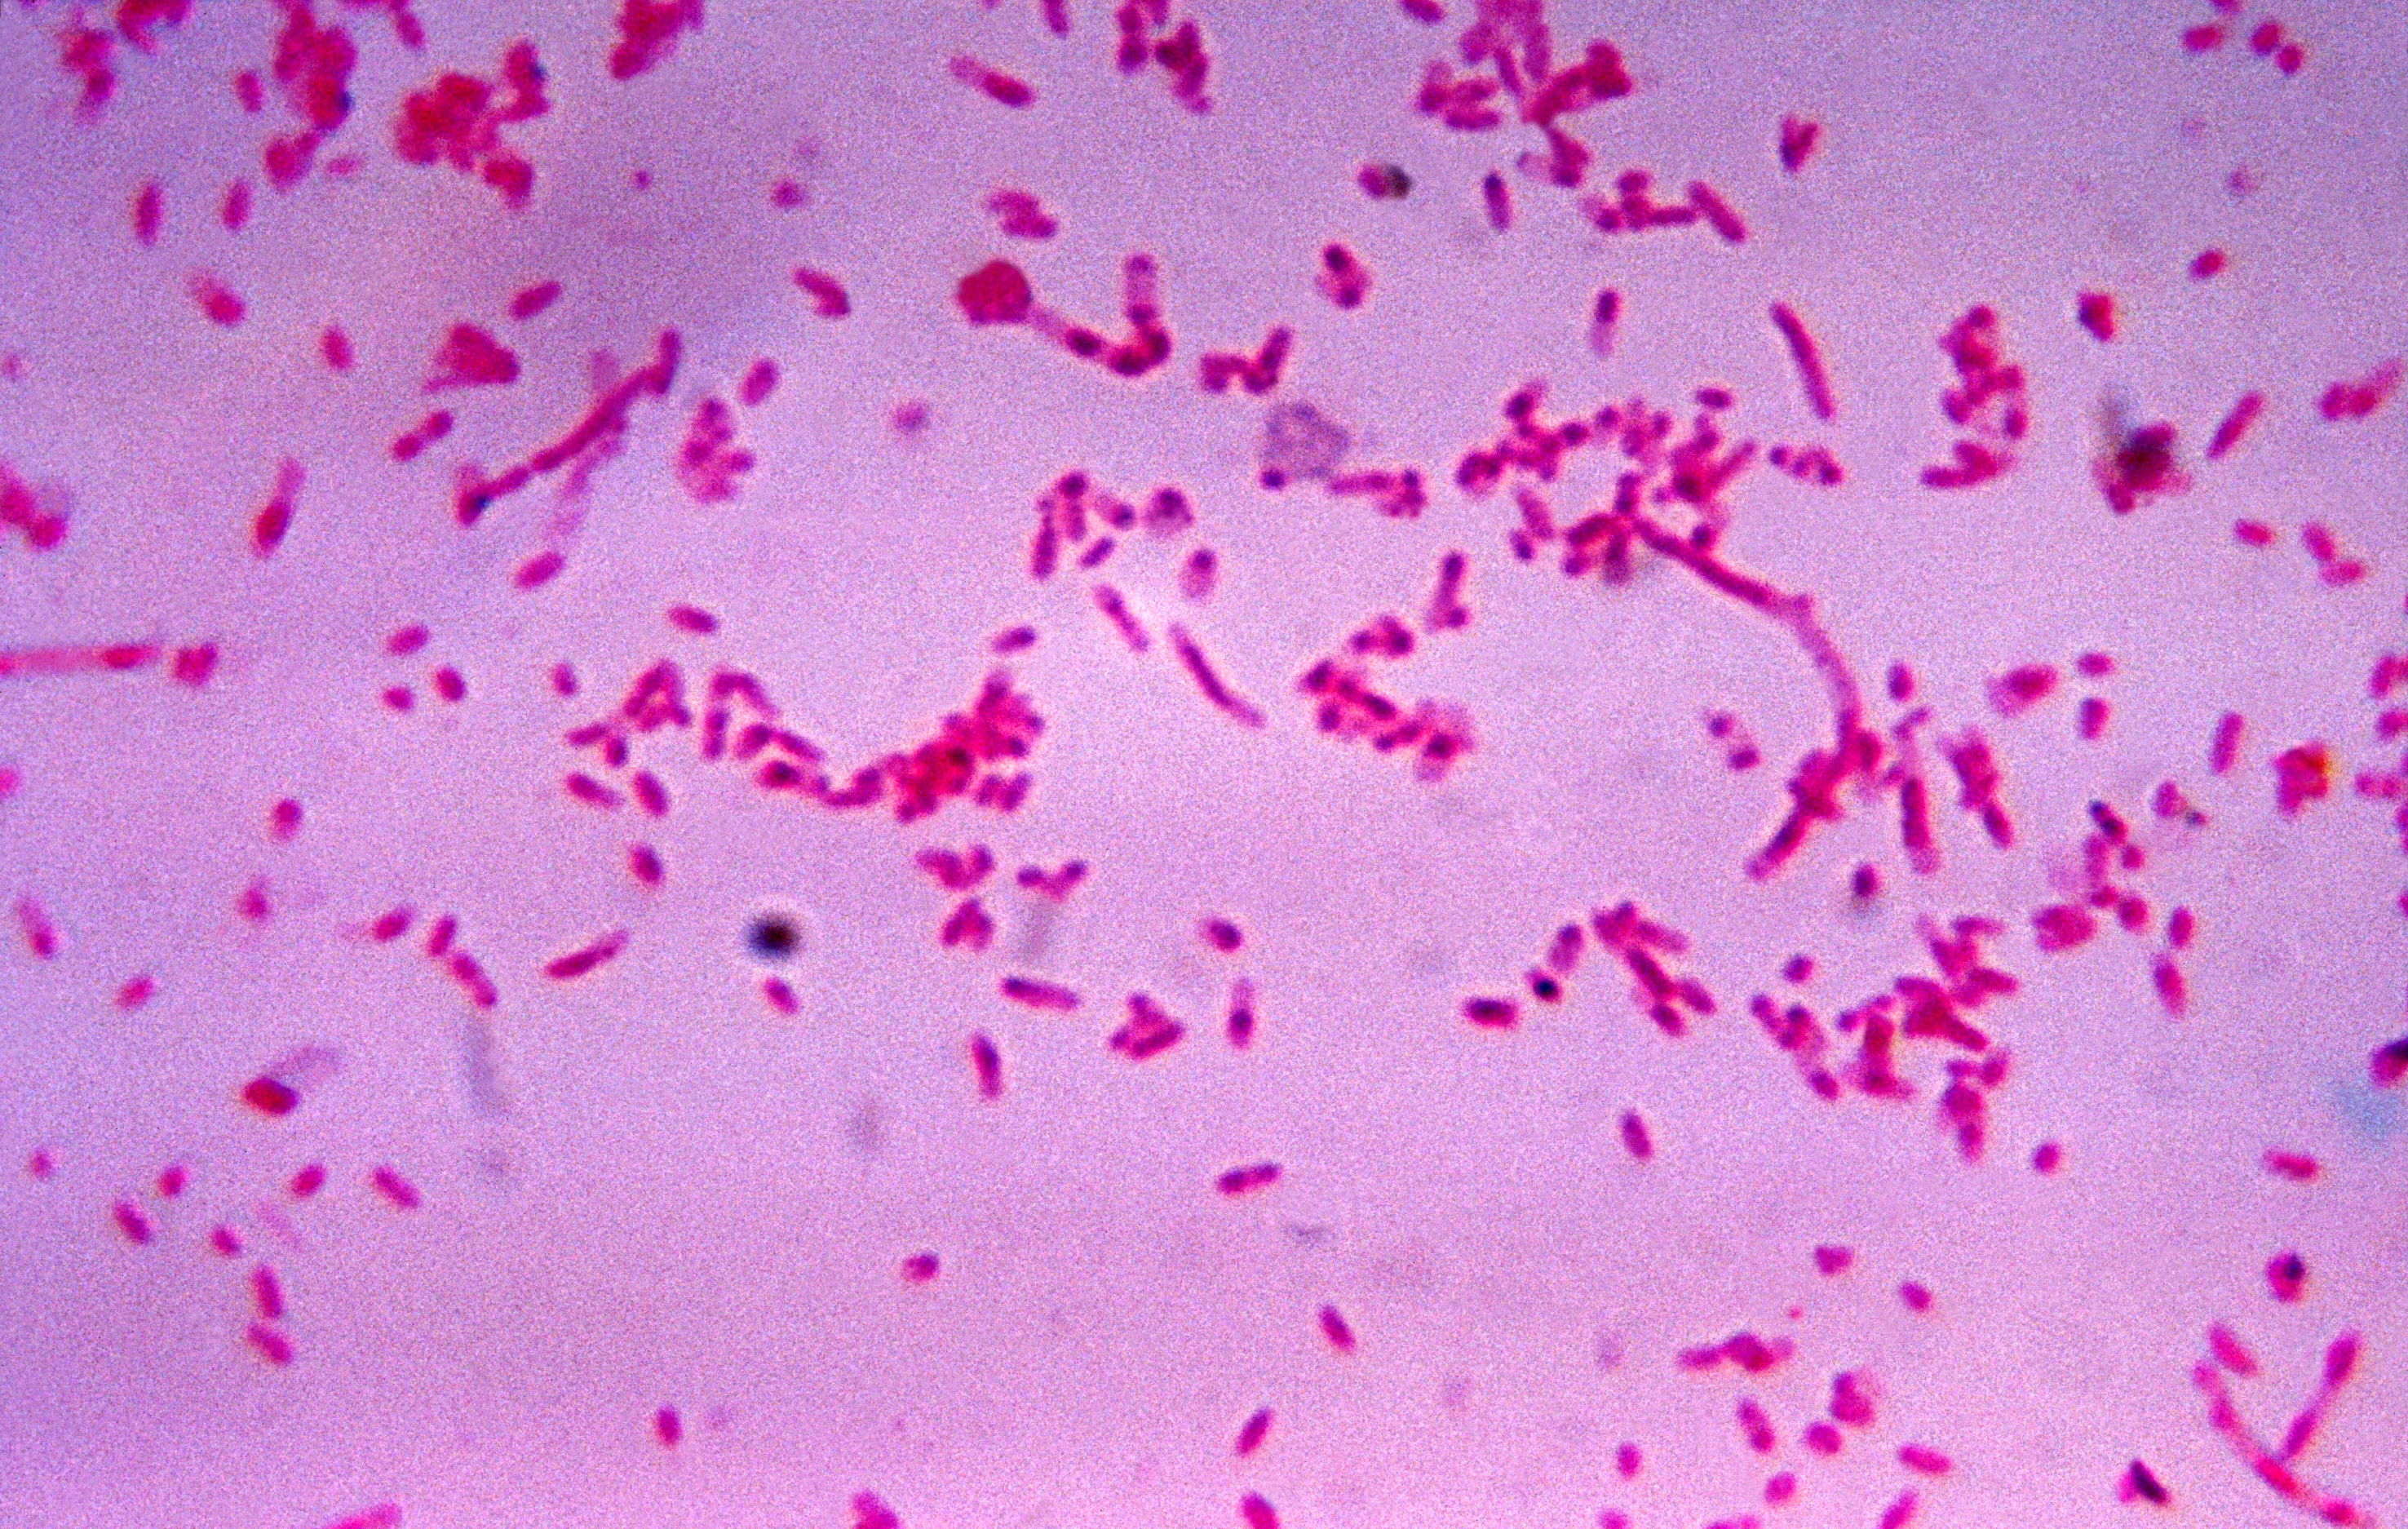 Fusobacterium novum in liquid culture.